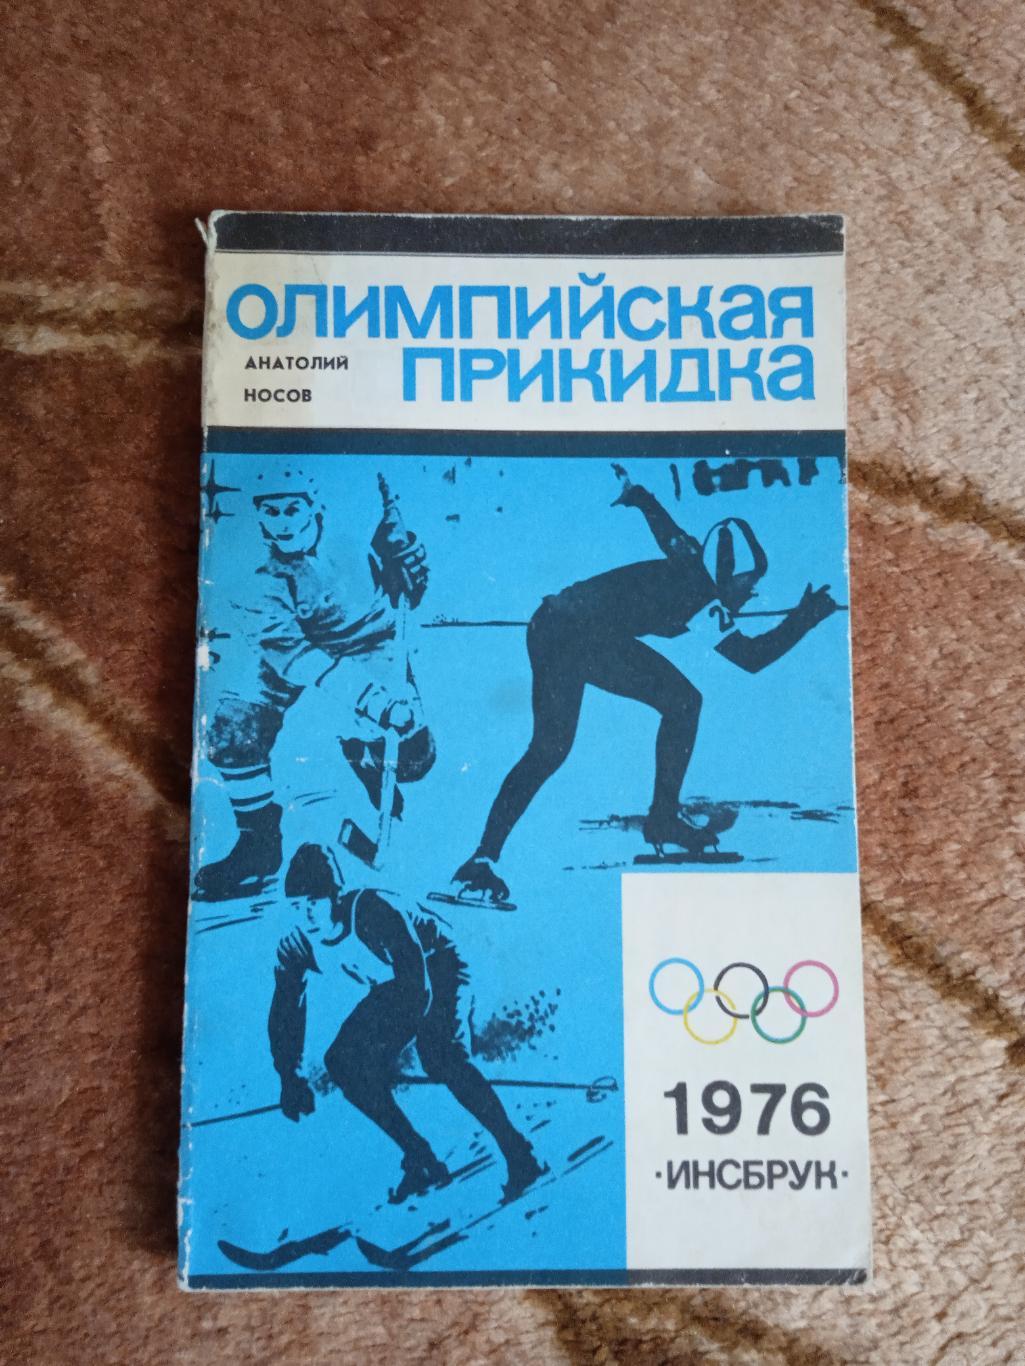 А.Носов.Олимпийская прикидка.Инсбрук 1976.Молодая гвардия 1975 г.